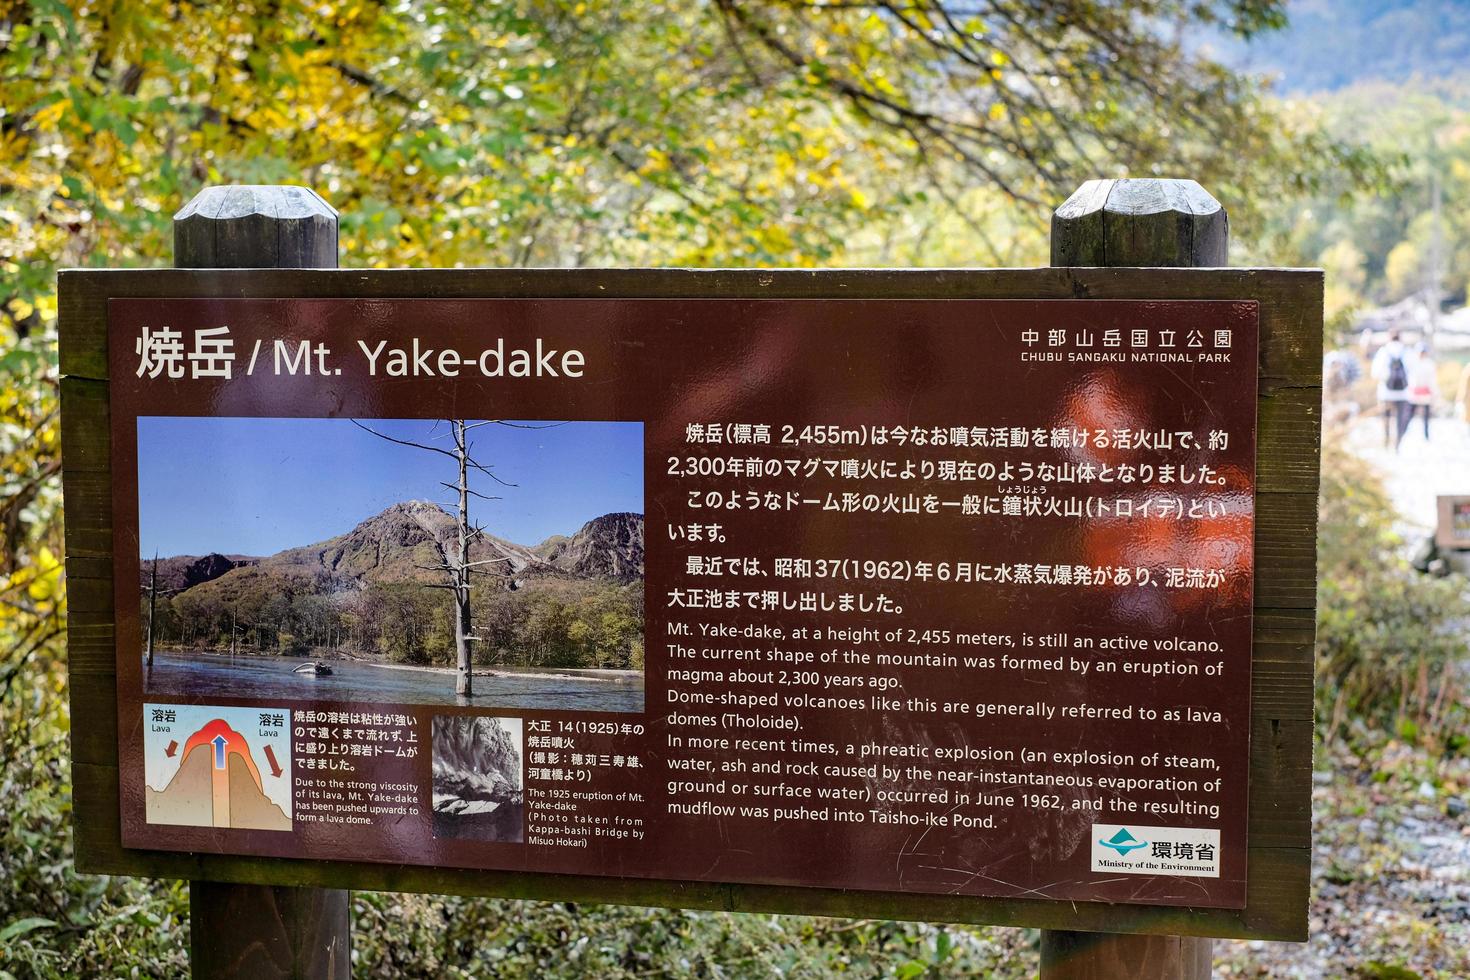 kamikochi, nagano, japón octubre de 2022 el puesto del monte yakedake con el estanque taisho taishoike se formó en 1915, cuando una erupción del volcán cercano monte yakedake represa el río azusa. foto